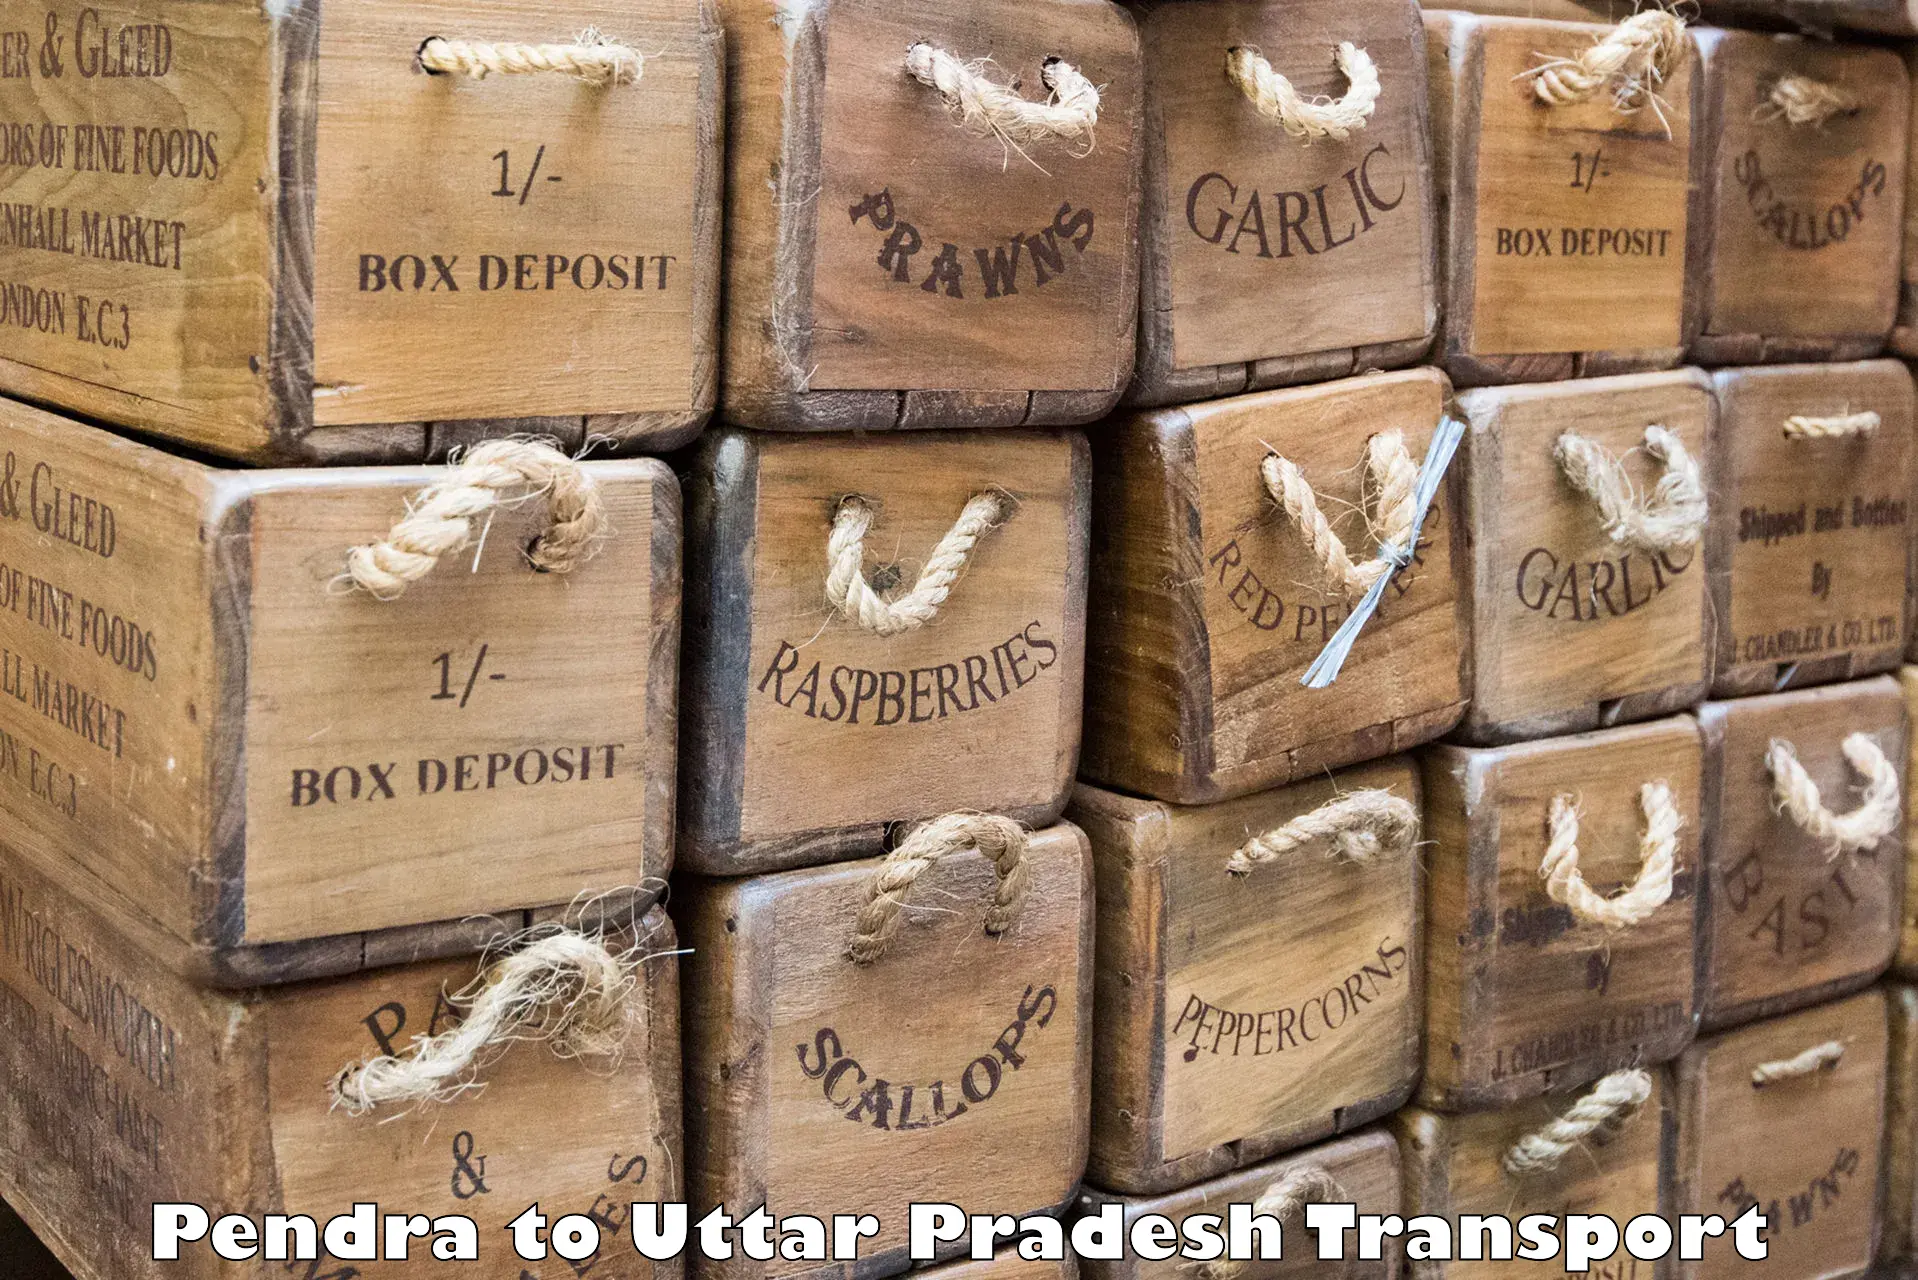 Shipping partner Pendra to Uttar Pradesh